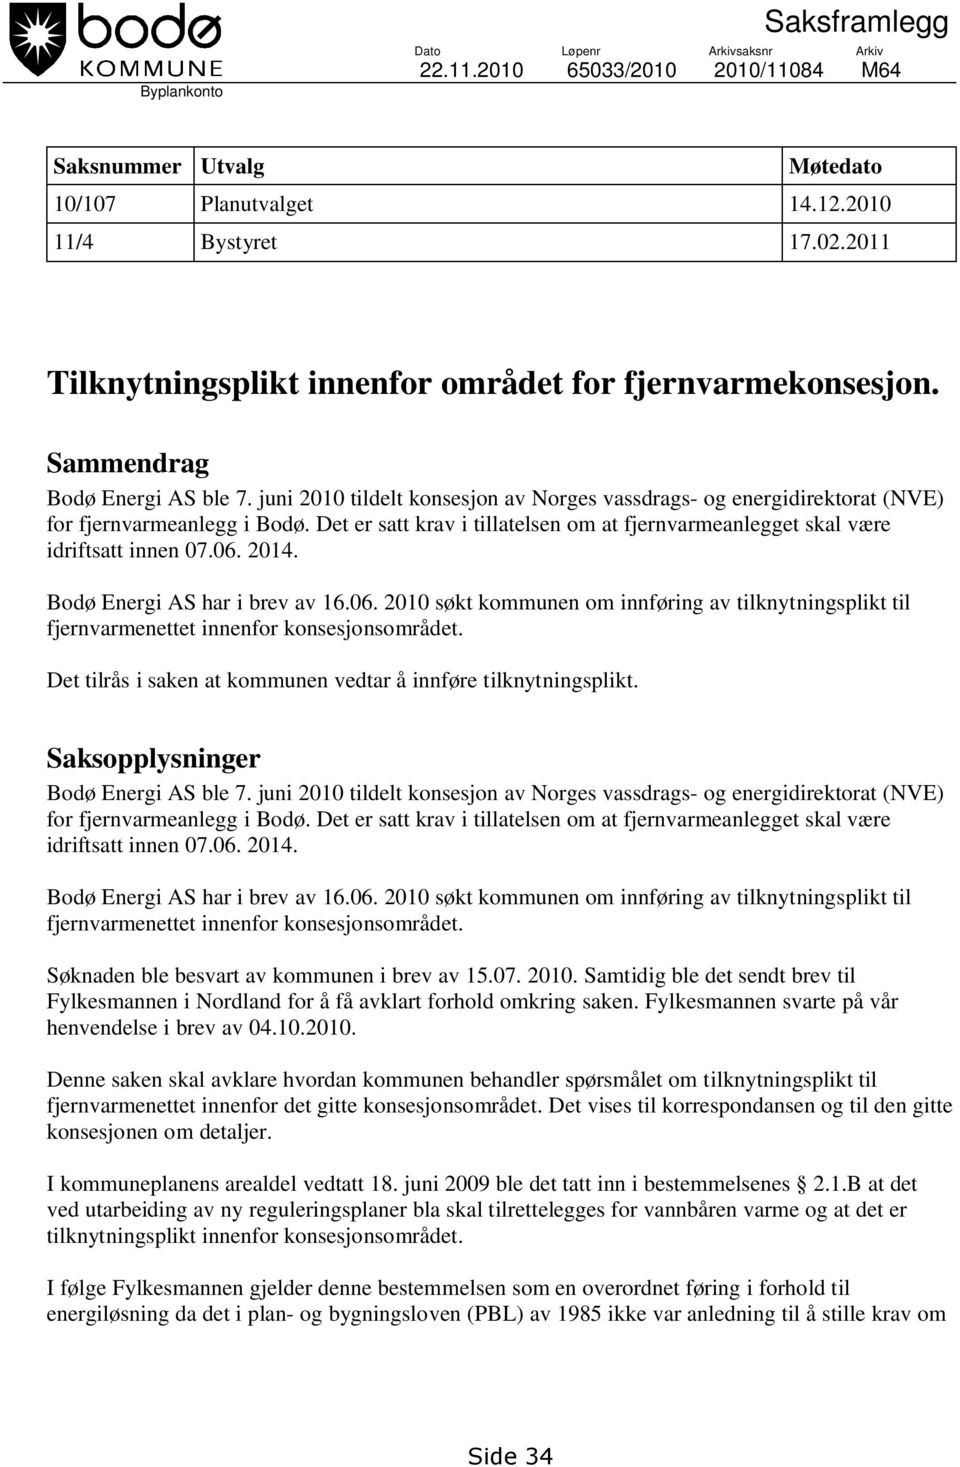 juni 2010 tildelt konsesjon av Norges vassdrags- og energidirektorat (NVE) for fjernvarmeanlegg i Bodø. Det er satt krav i tillatelsen om at fjernvarmeanlegget skal være idriftsatt innen 07.06. 2014.